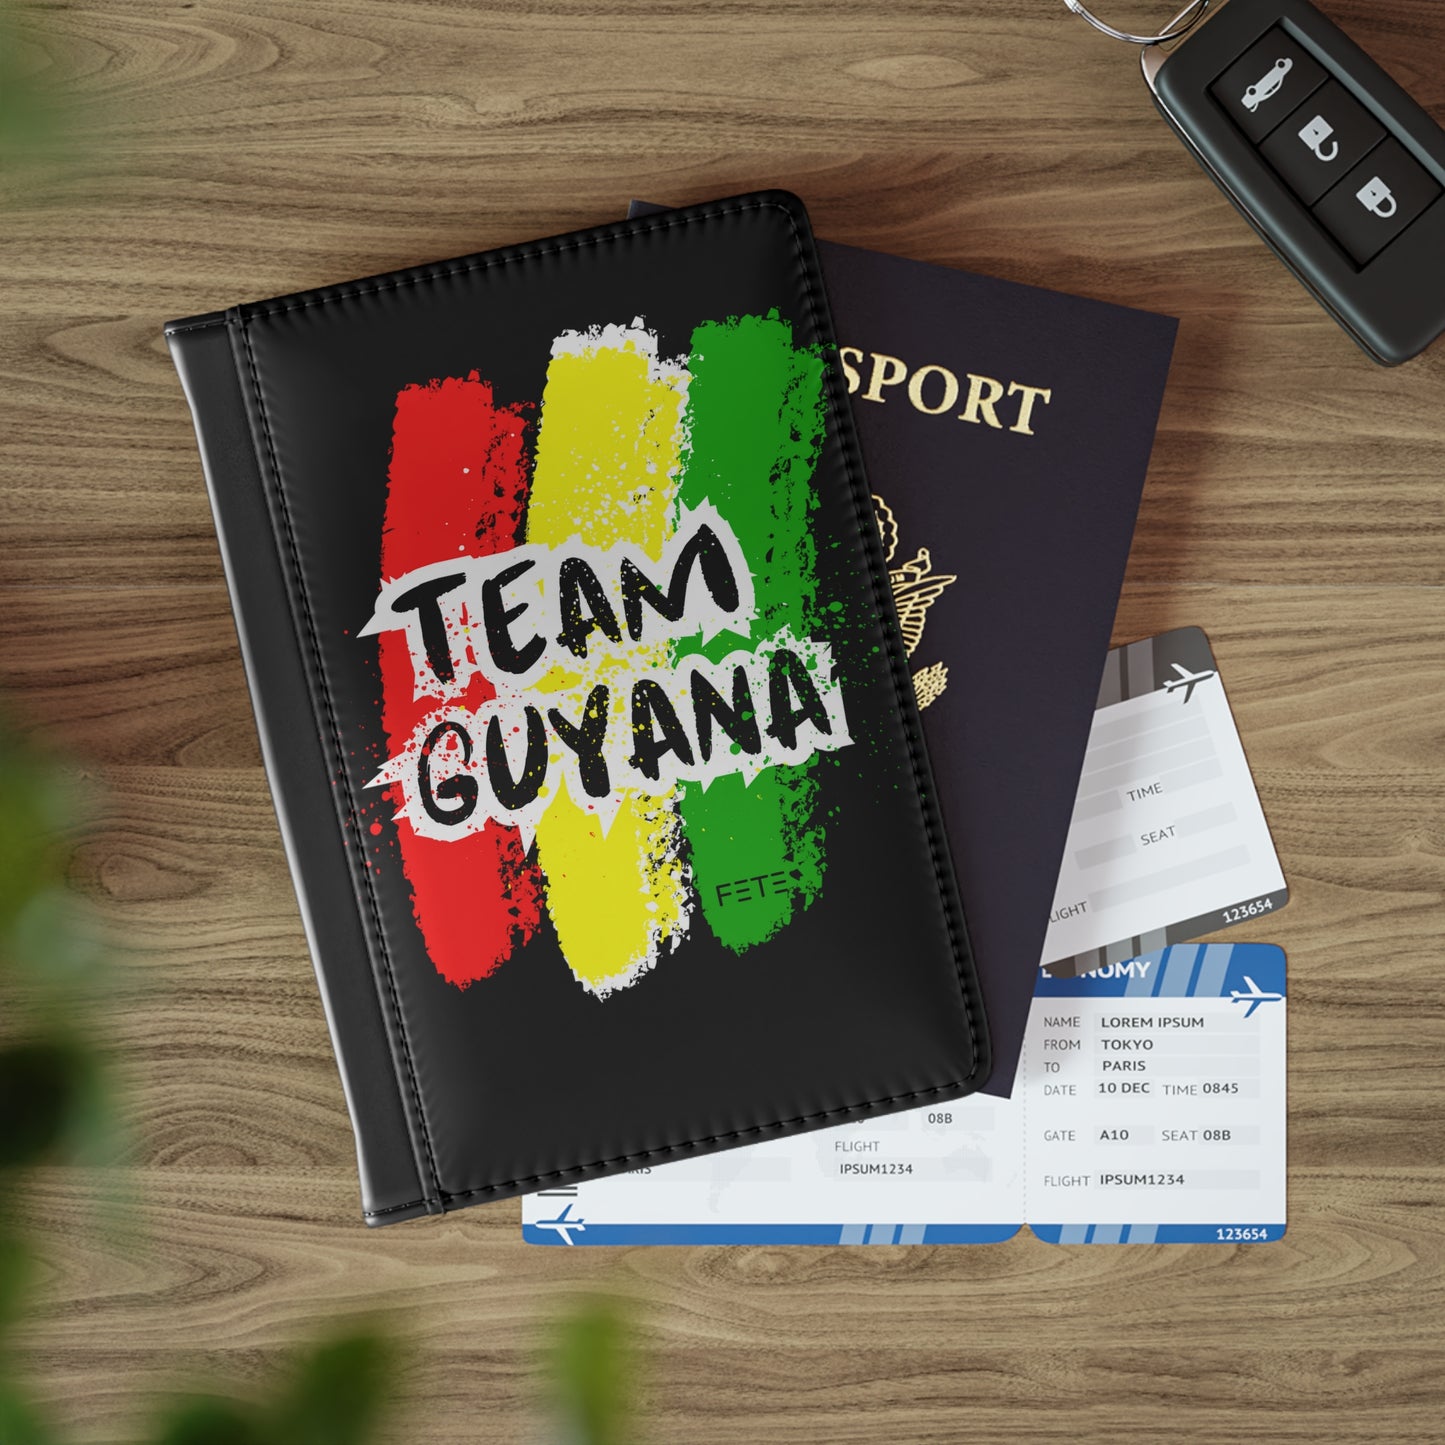 Team Guyana Passport Cover